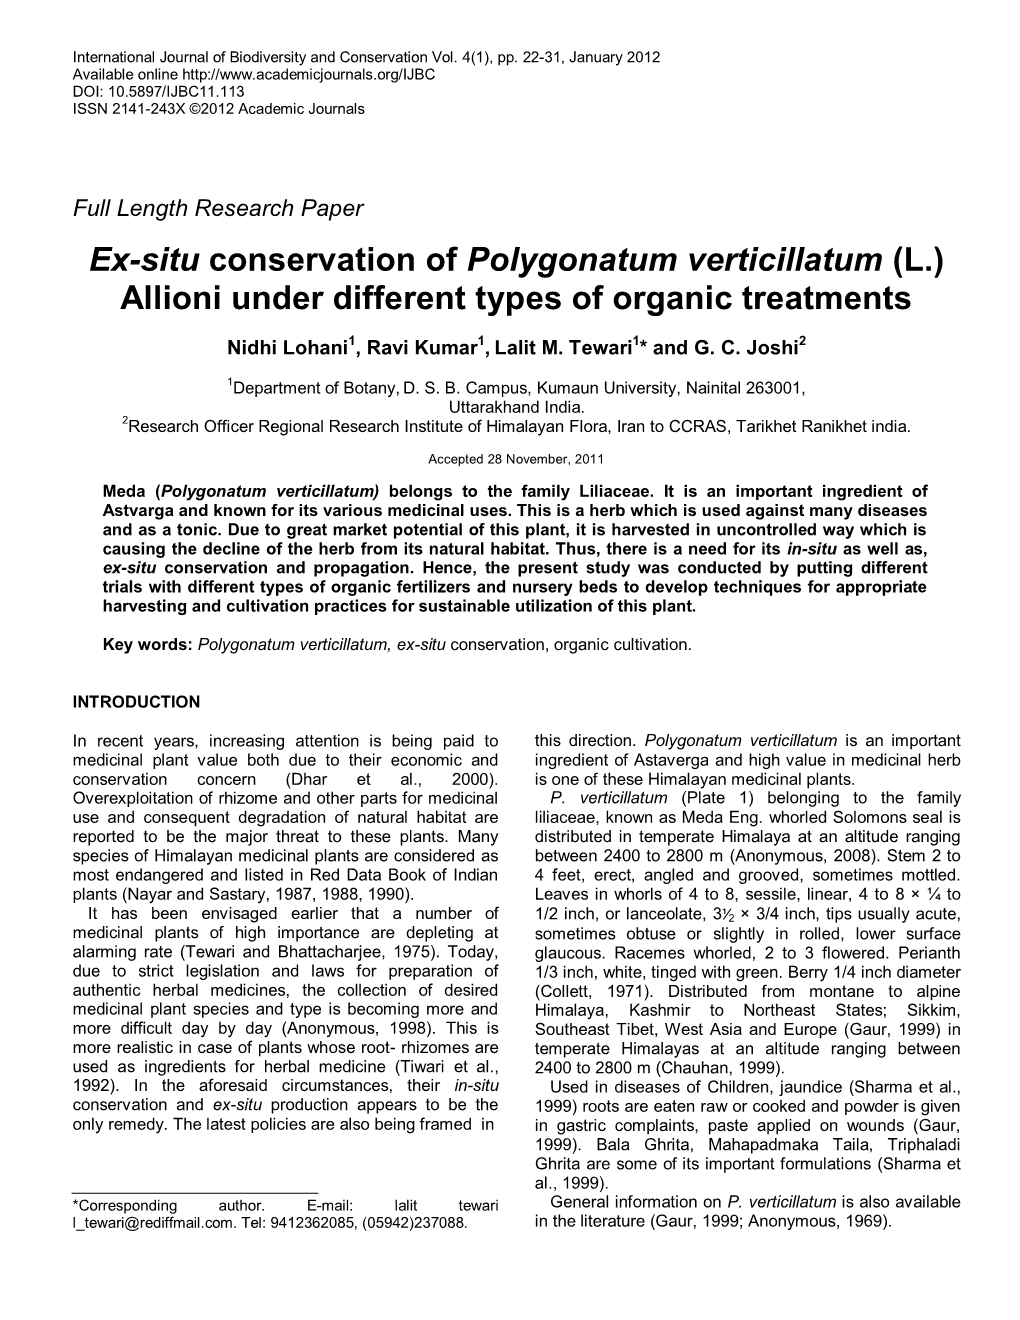 Ex-Situ Conservation of Polygonatum Verticillatum (L.) Allioni Under Different Types of Organic Treatments